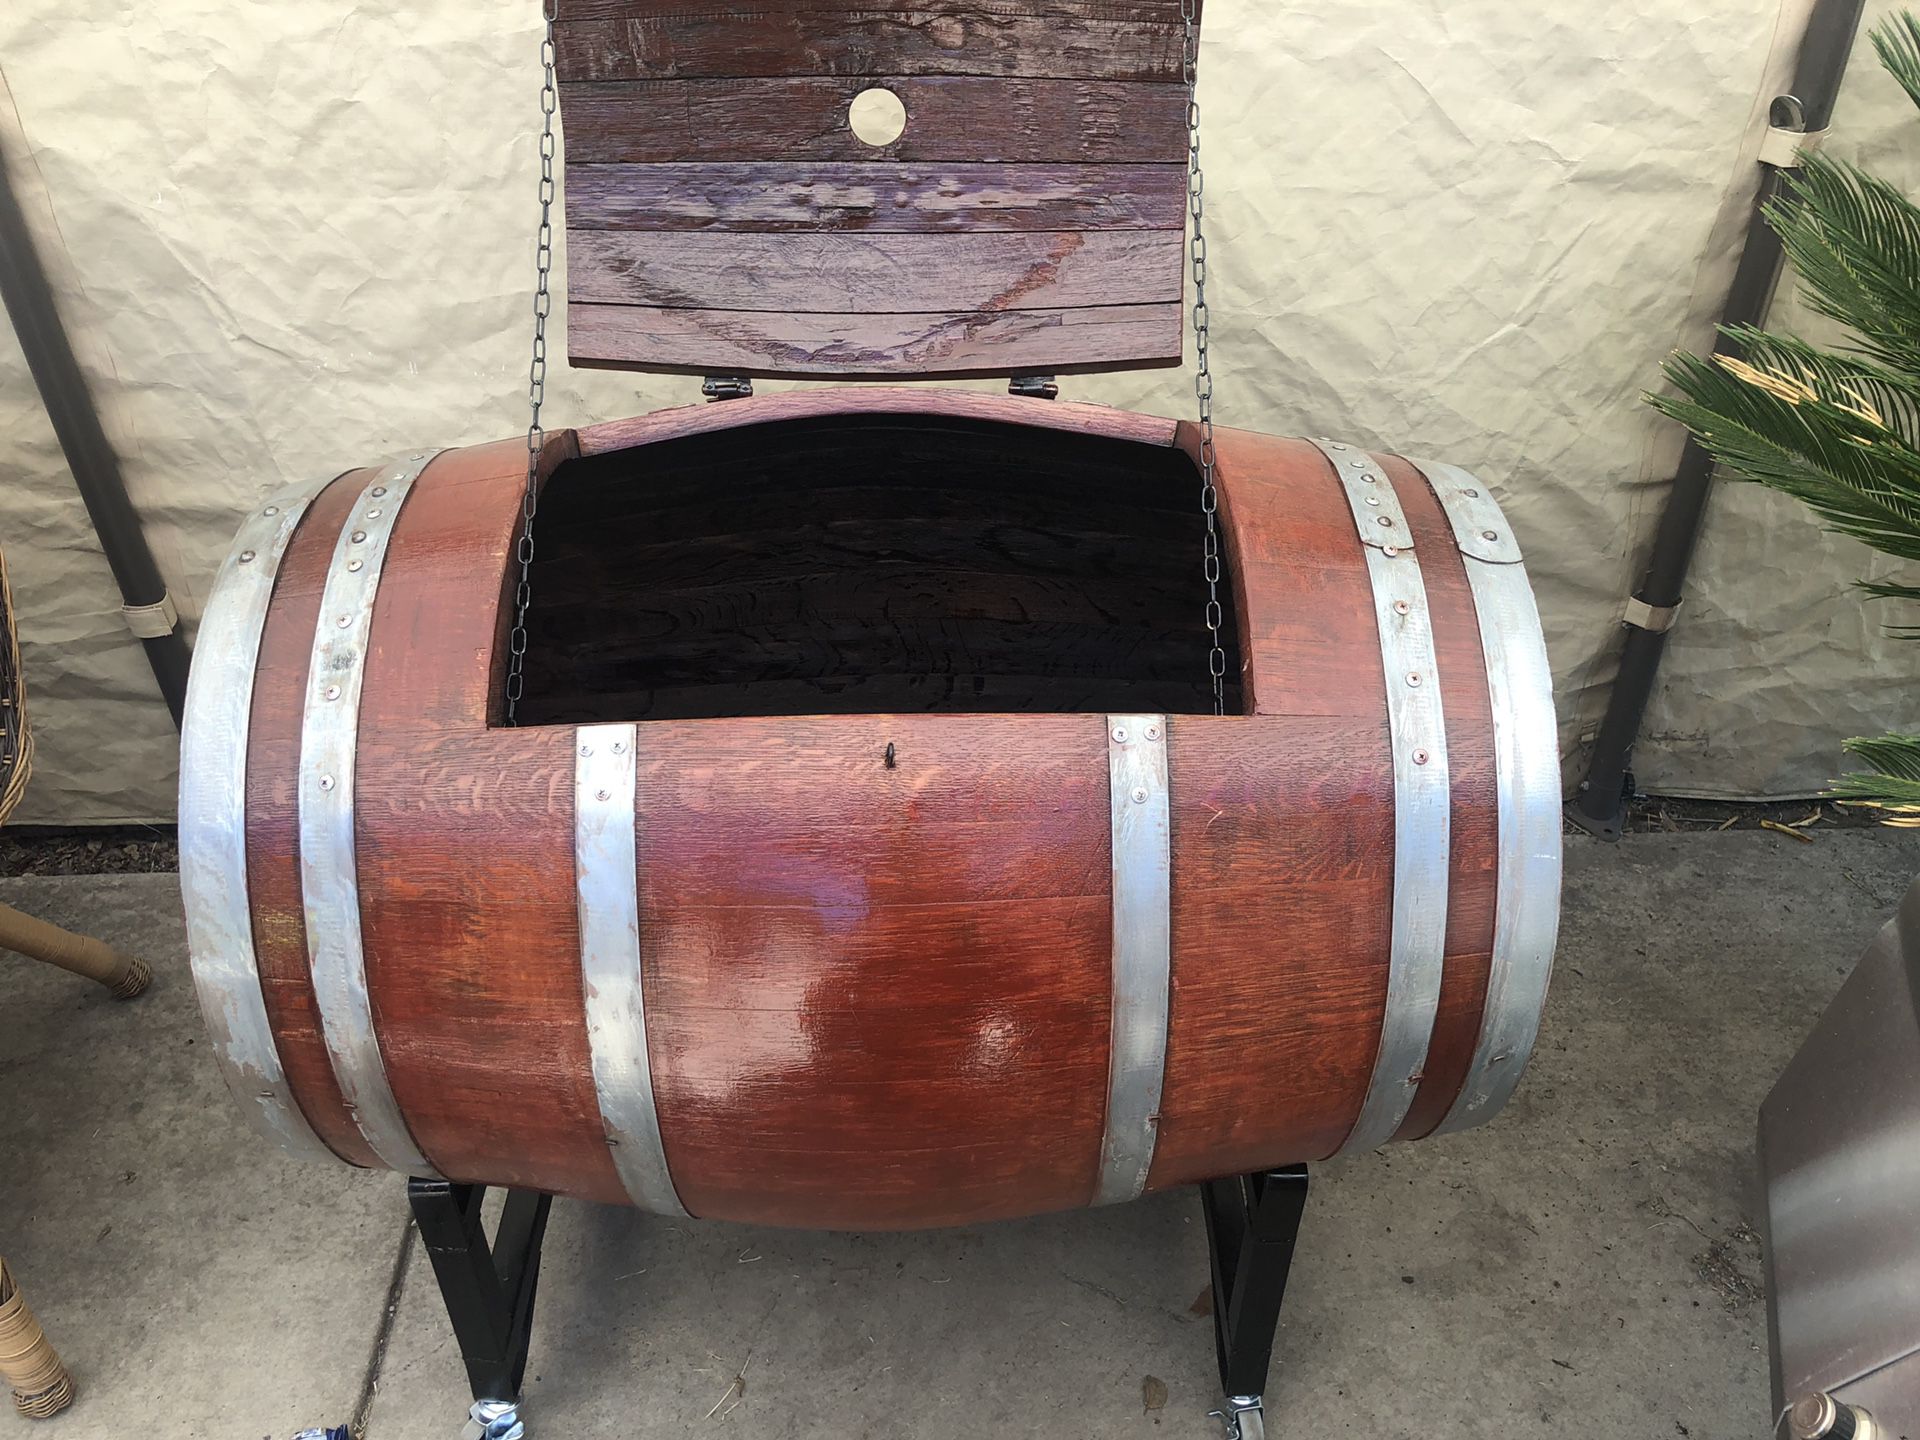 Barrel/Cooler for beers/drinks